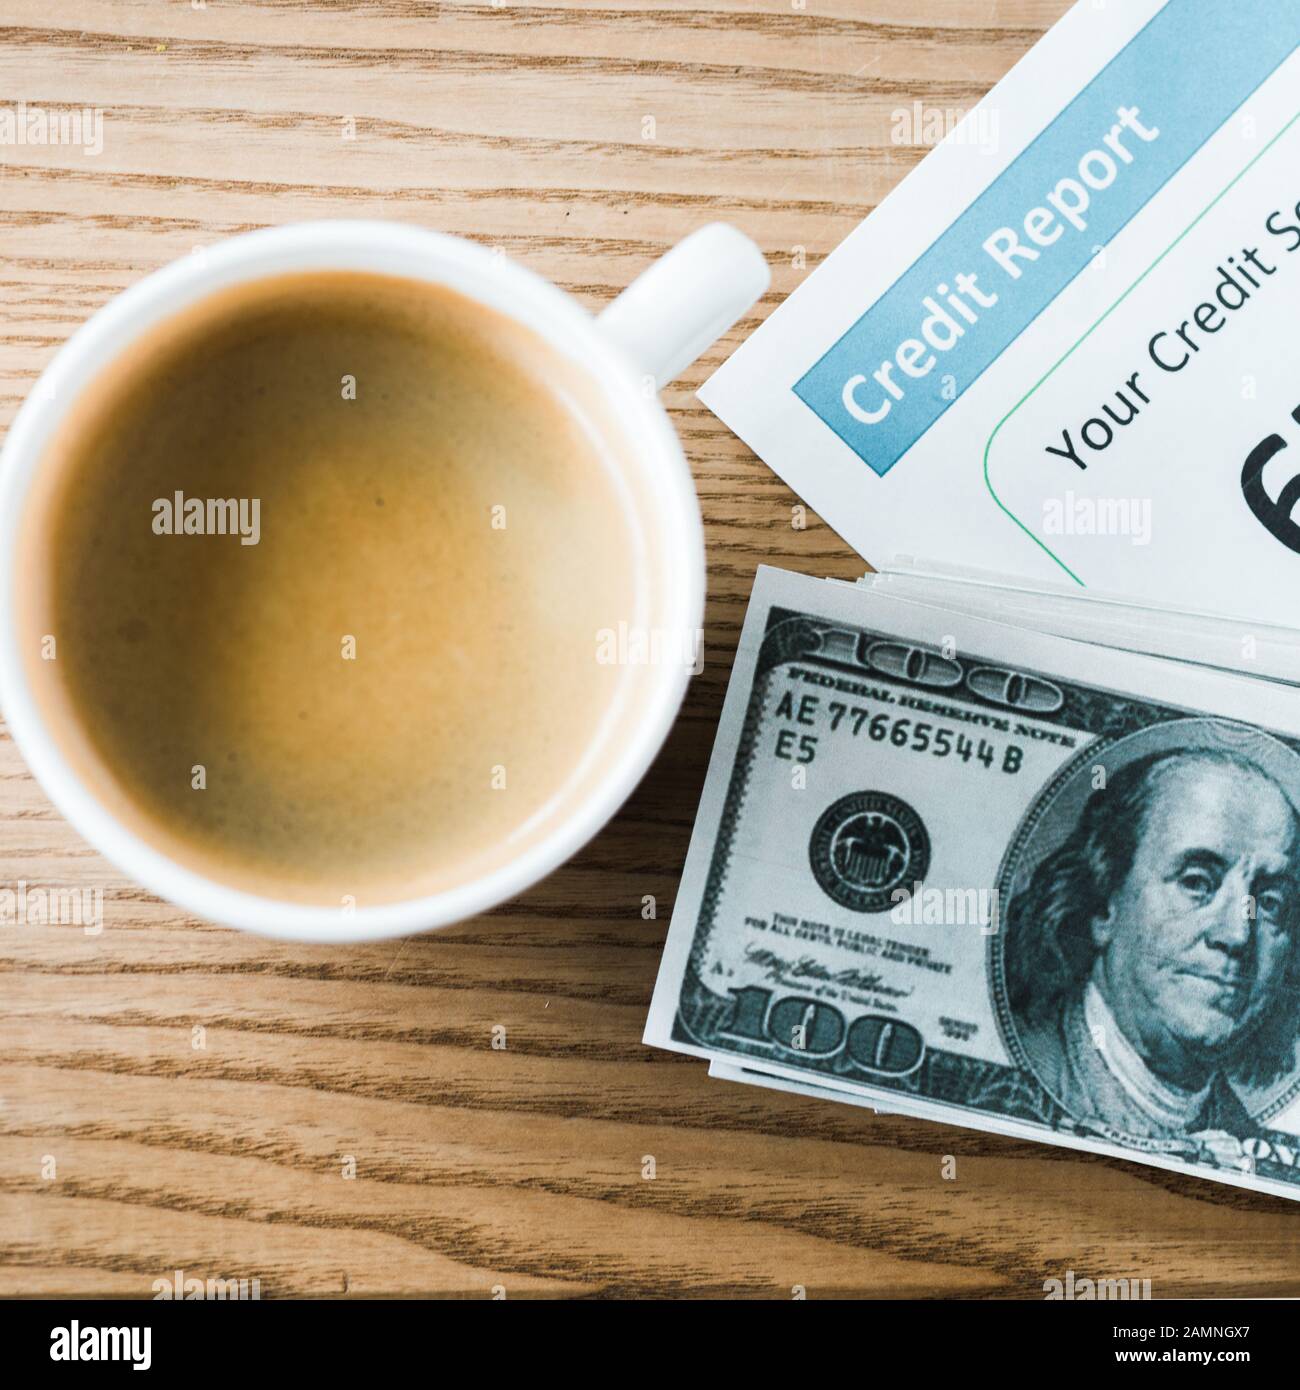 vue de dessus de tasse avec café près du papier avec lettrage de rapport de crédit sur papier et argent Banque D'Images